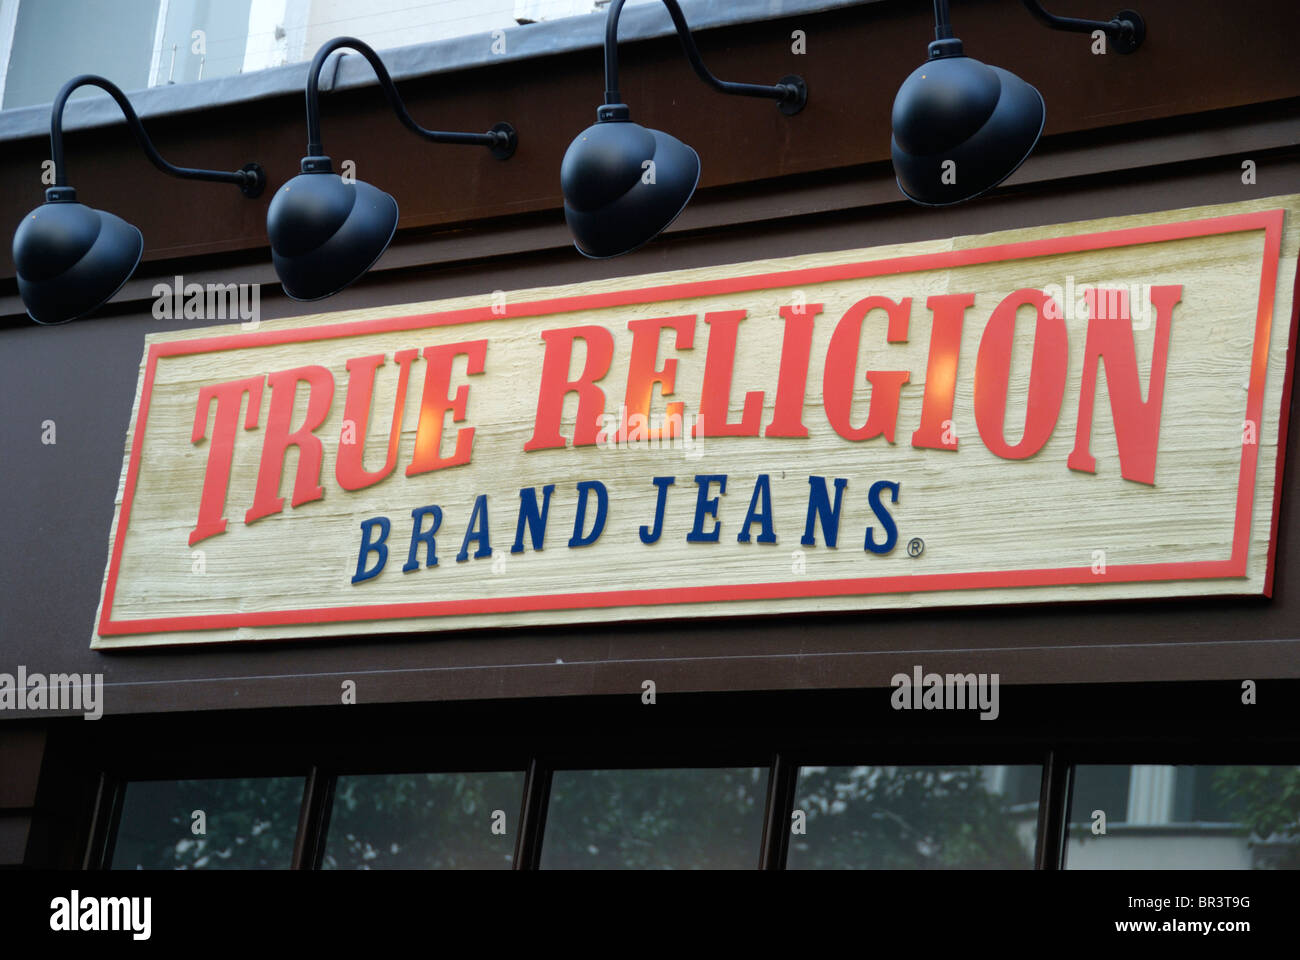 true religion clothing line